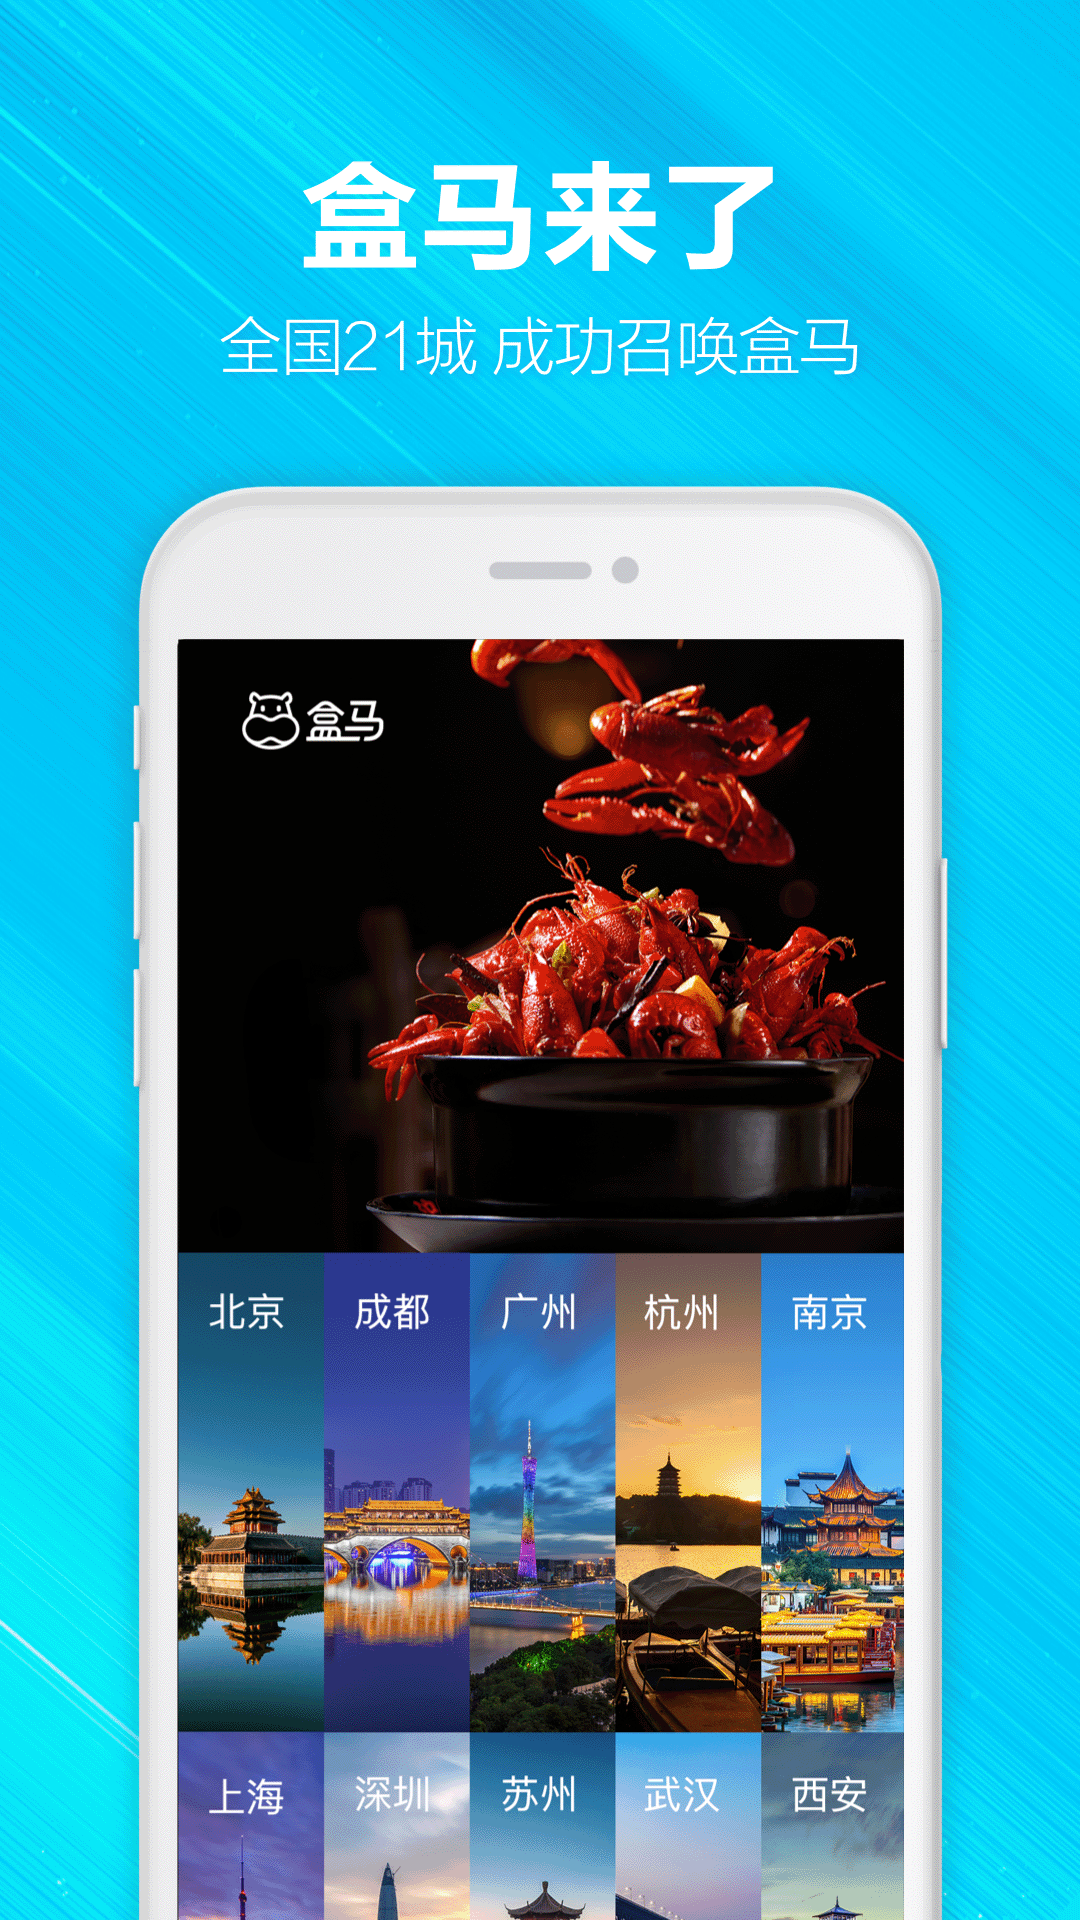 盒马生鲜超市app下载v5.59.0